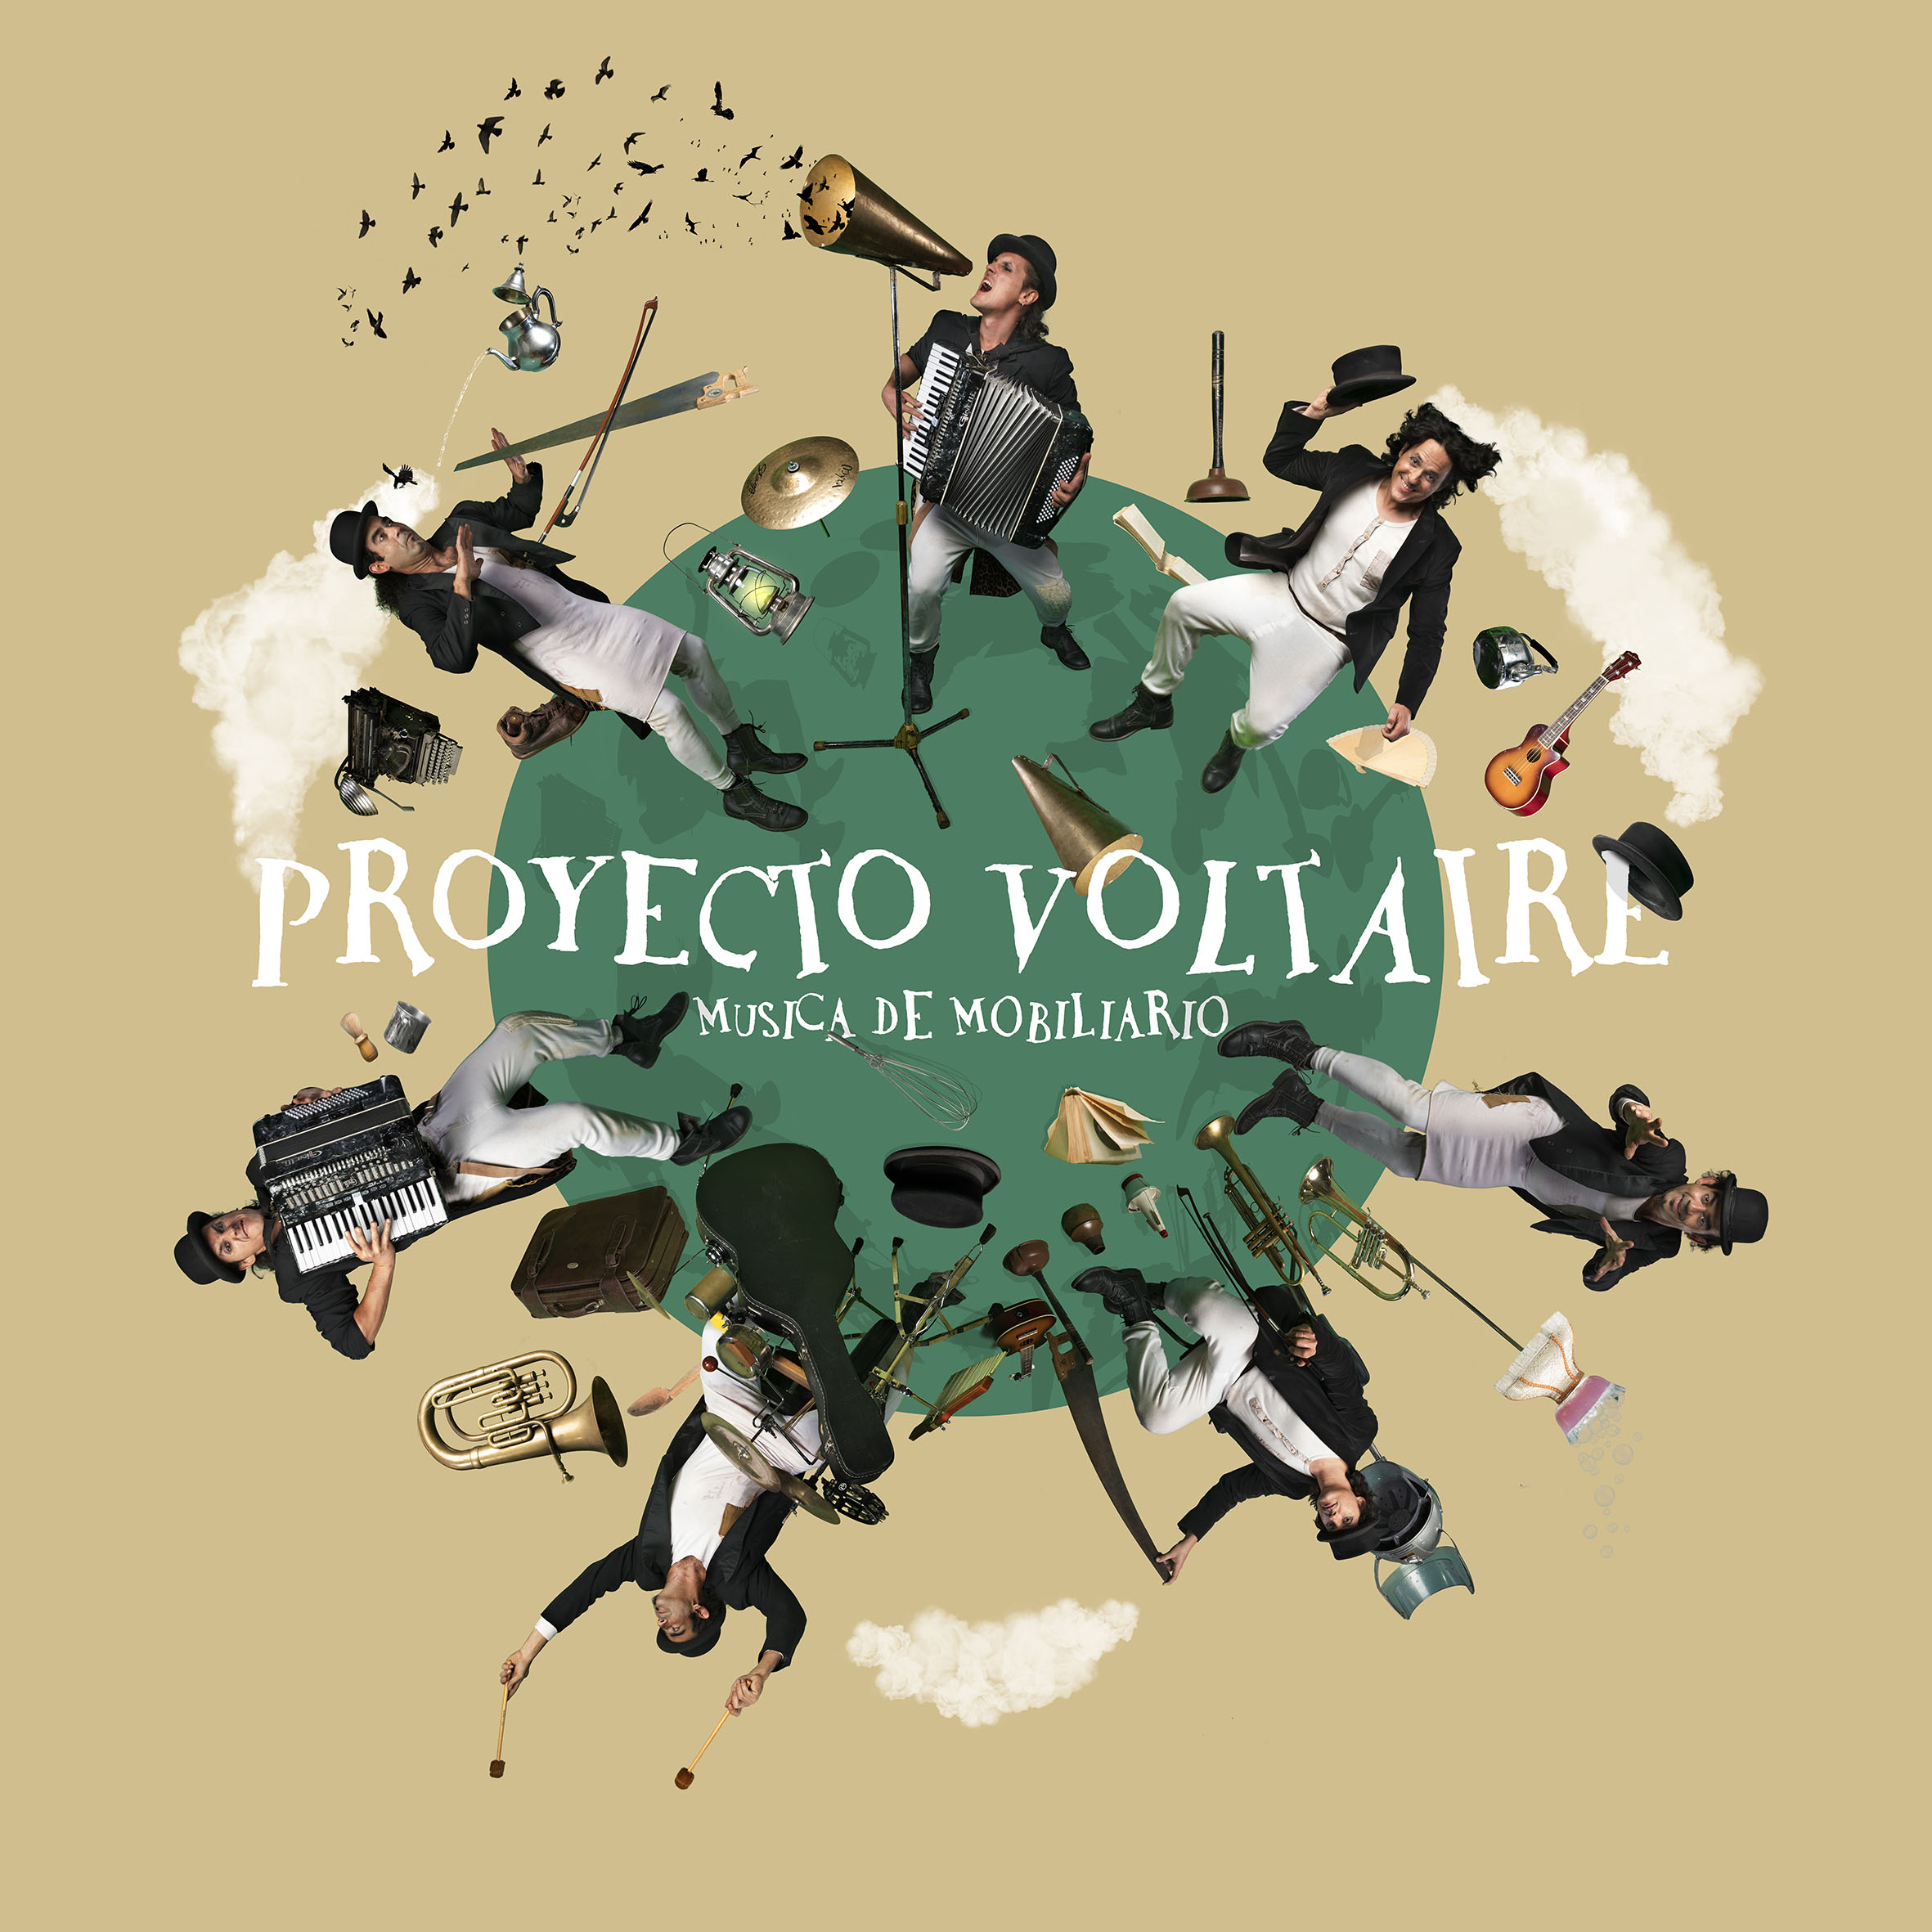 Imagen del espectáculo -  Proyecto Voltaire - música de mobiliario